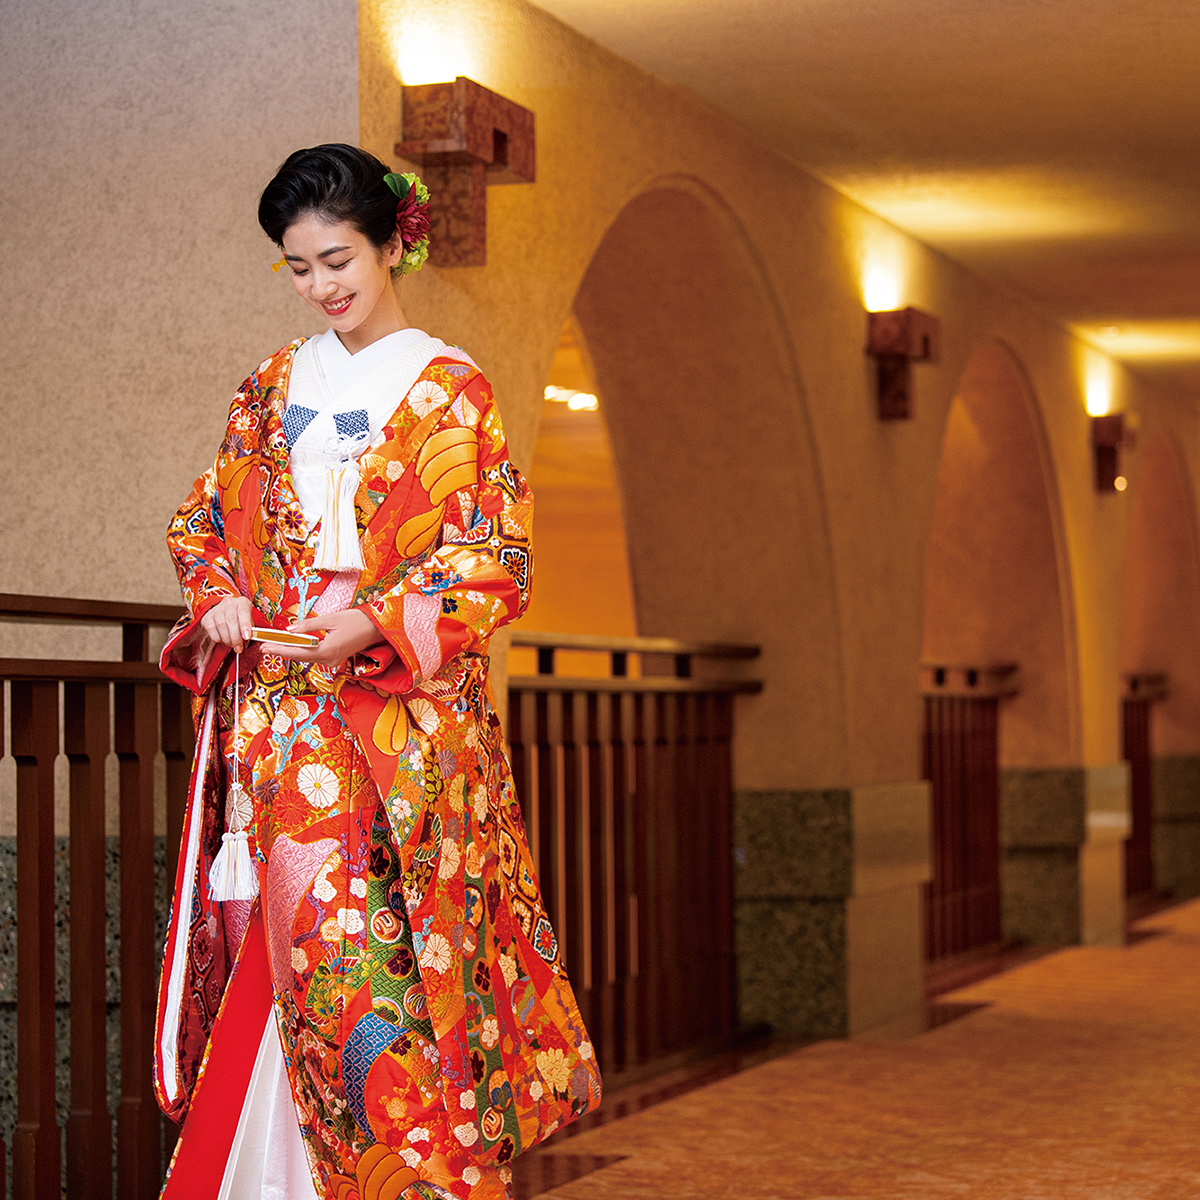 京都ホテルオークラブライダル 公式インスタグラム【kyotohotelokura_bridal】新着情報イメージ2